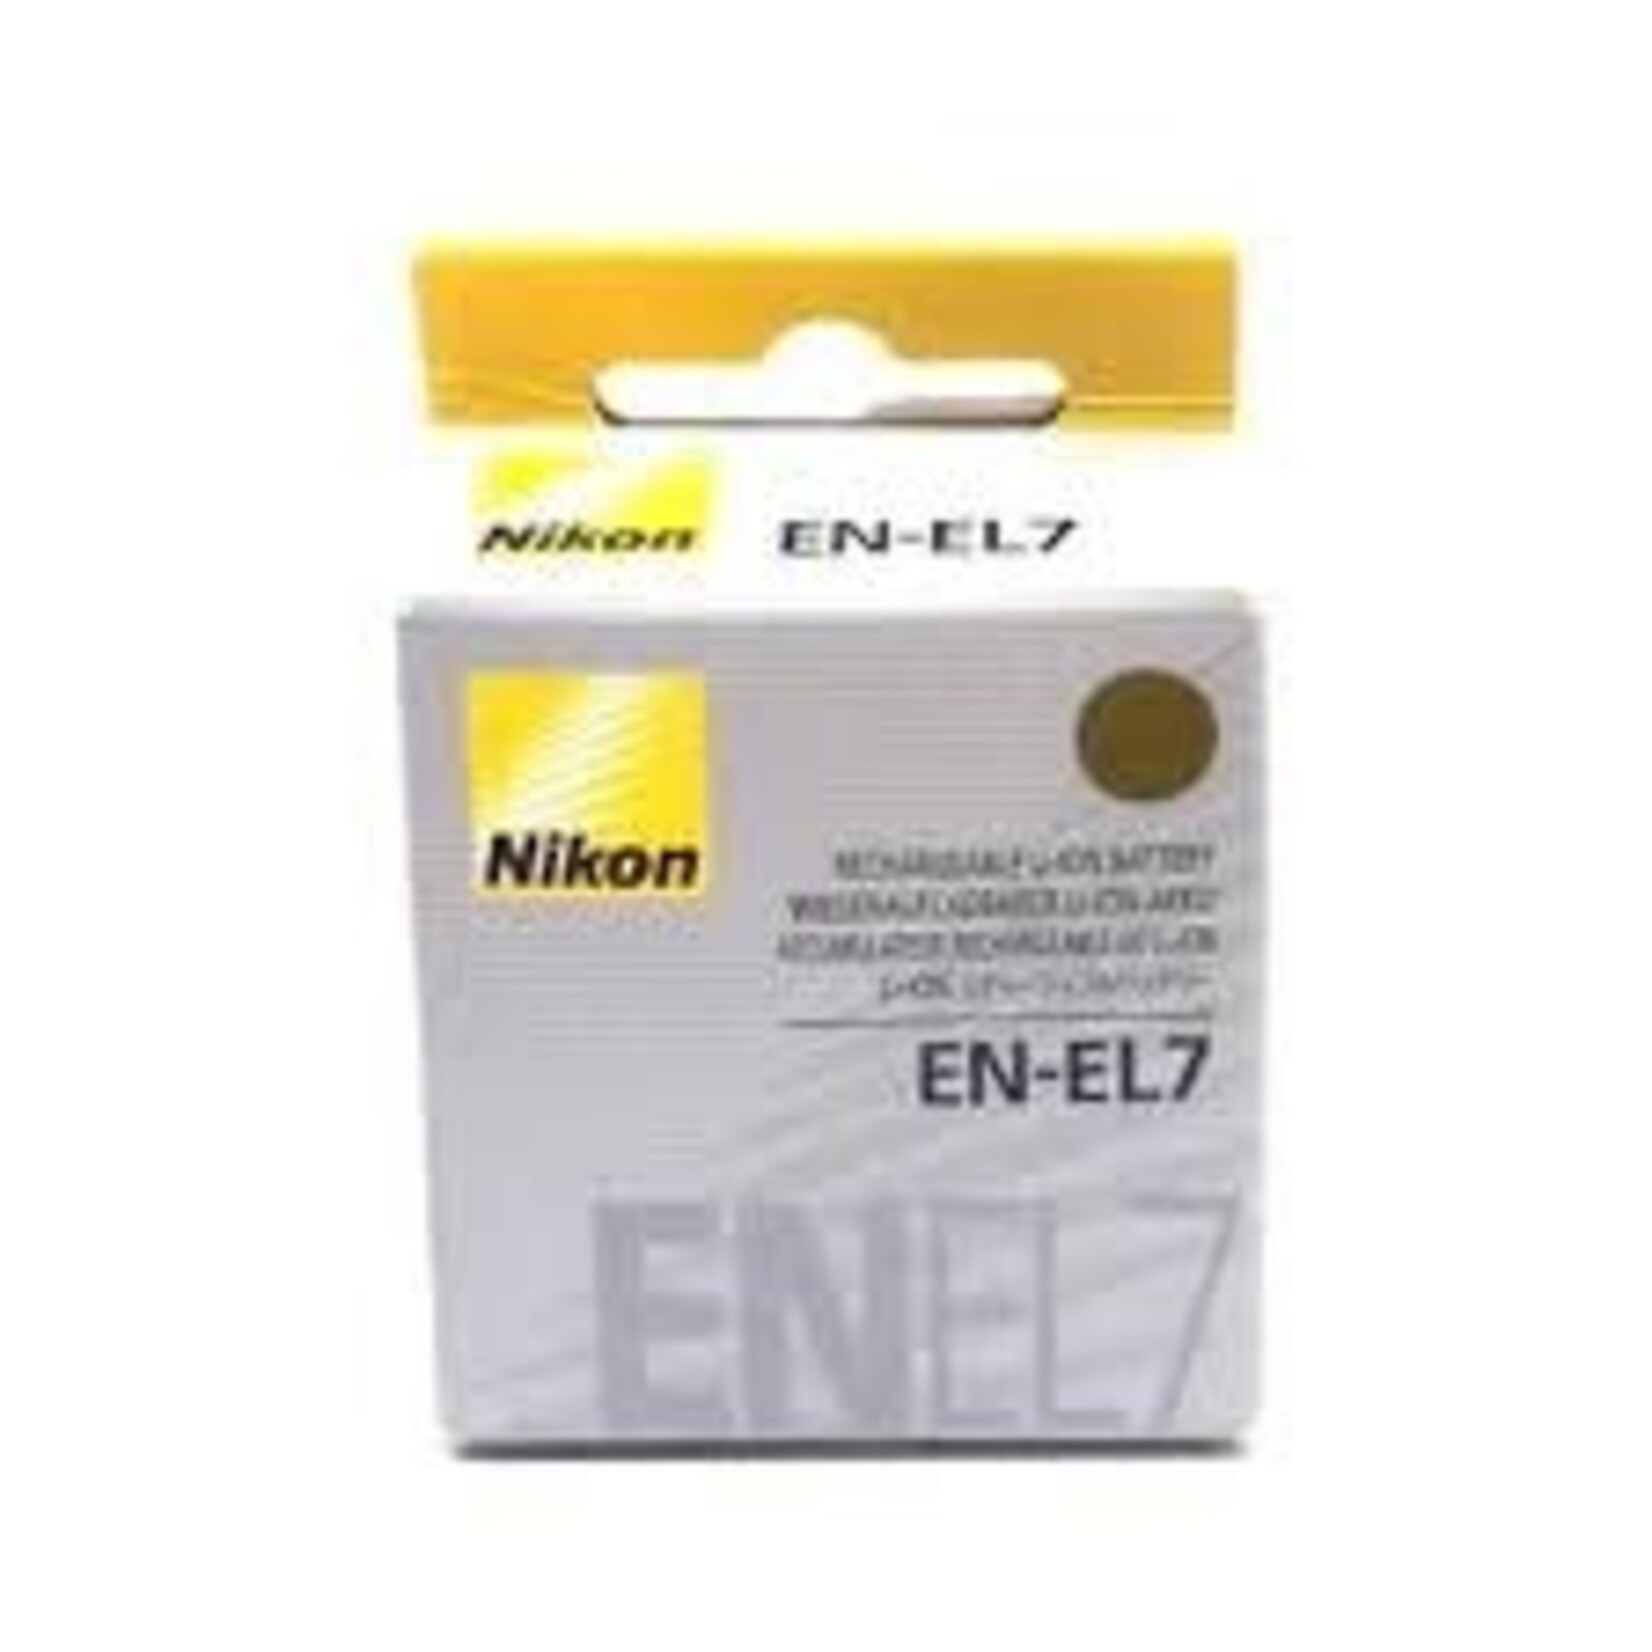 Nikon Nikon EN-EL7 Battery